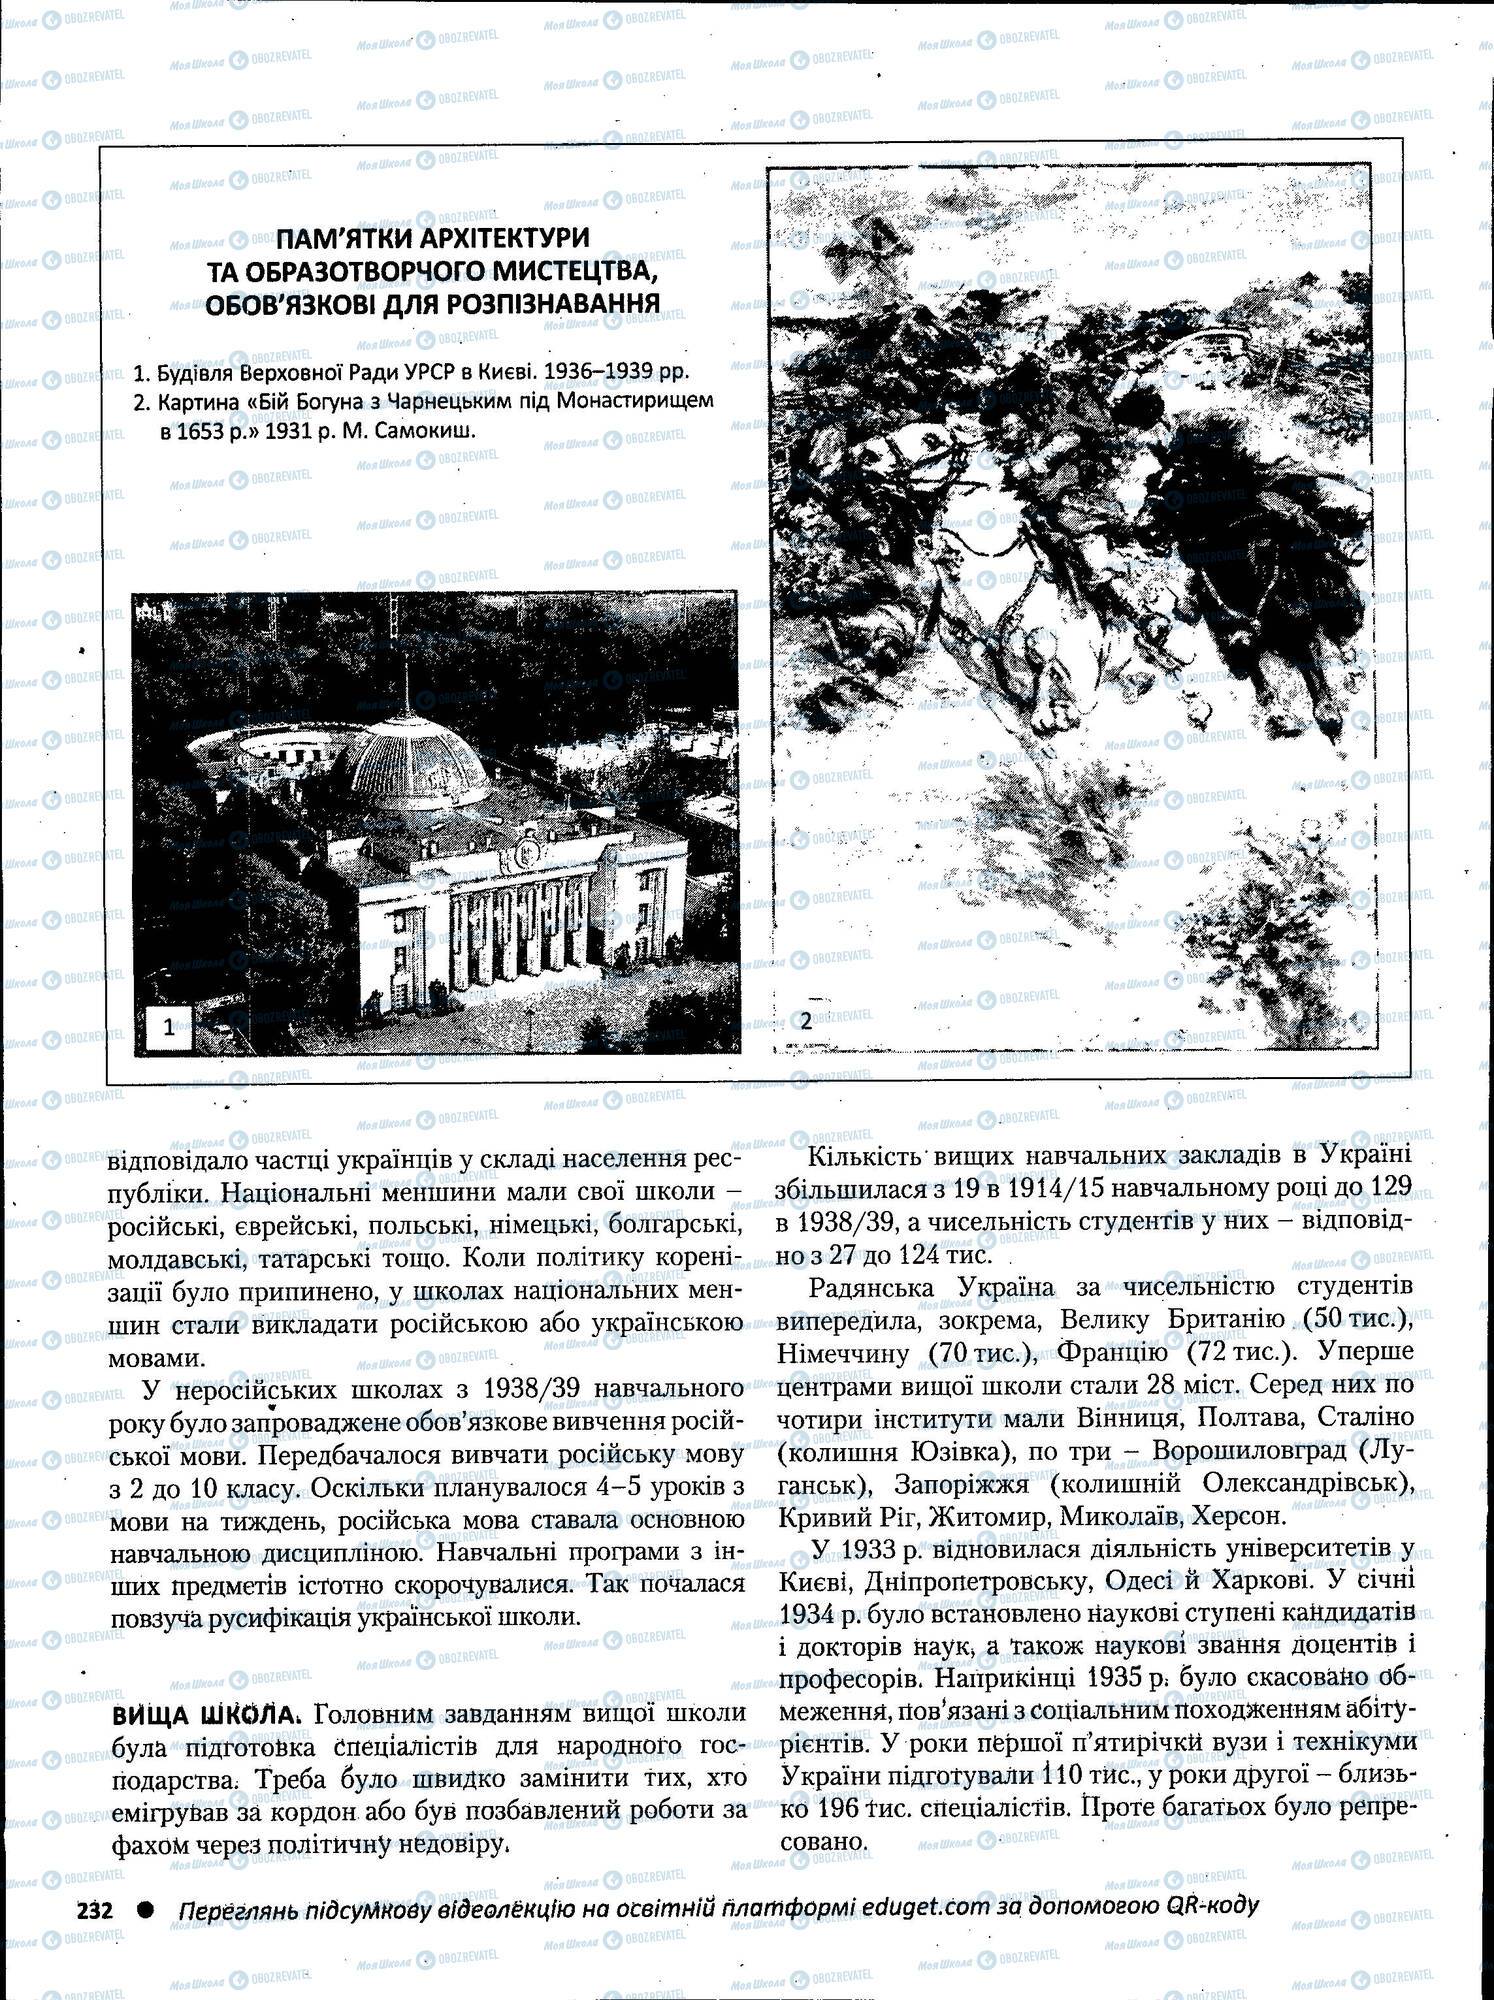 ЗНО История Украины 11 класс страница 232